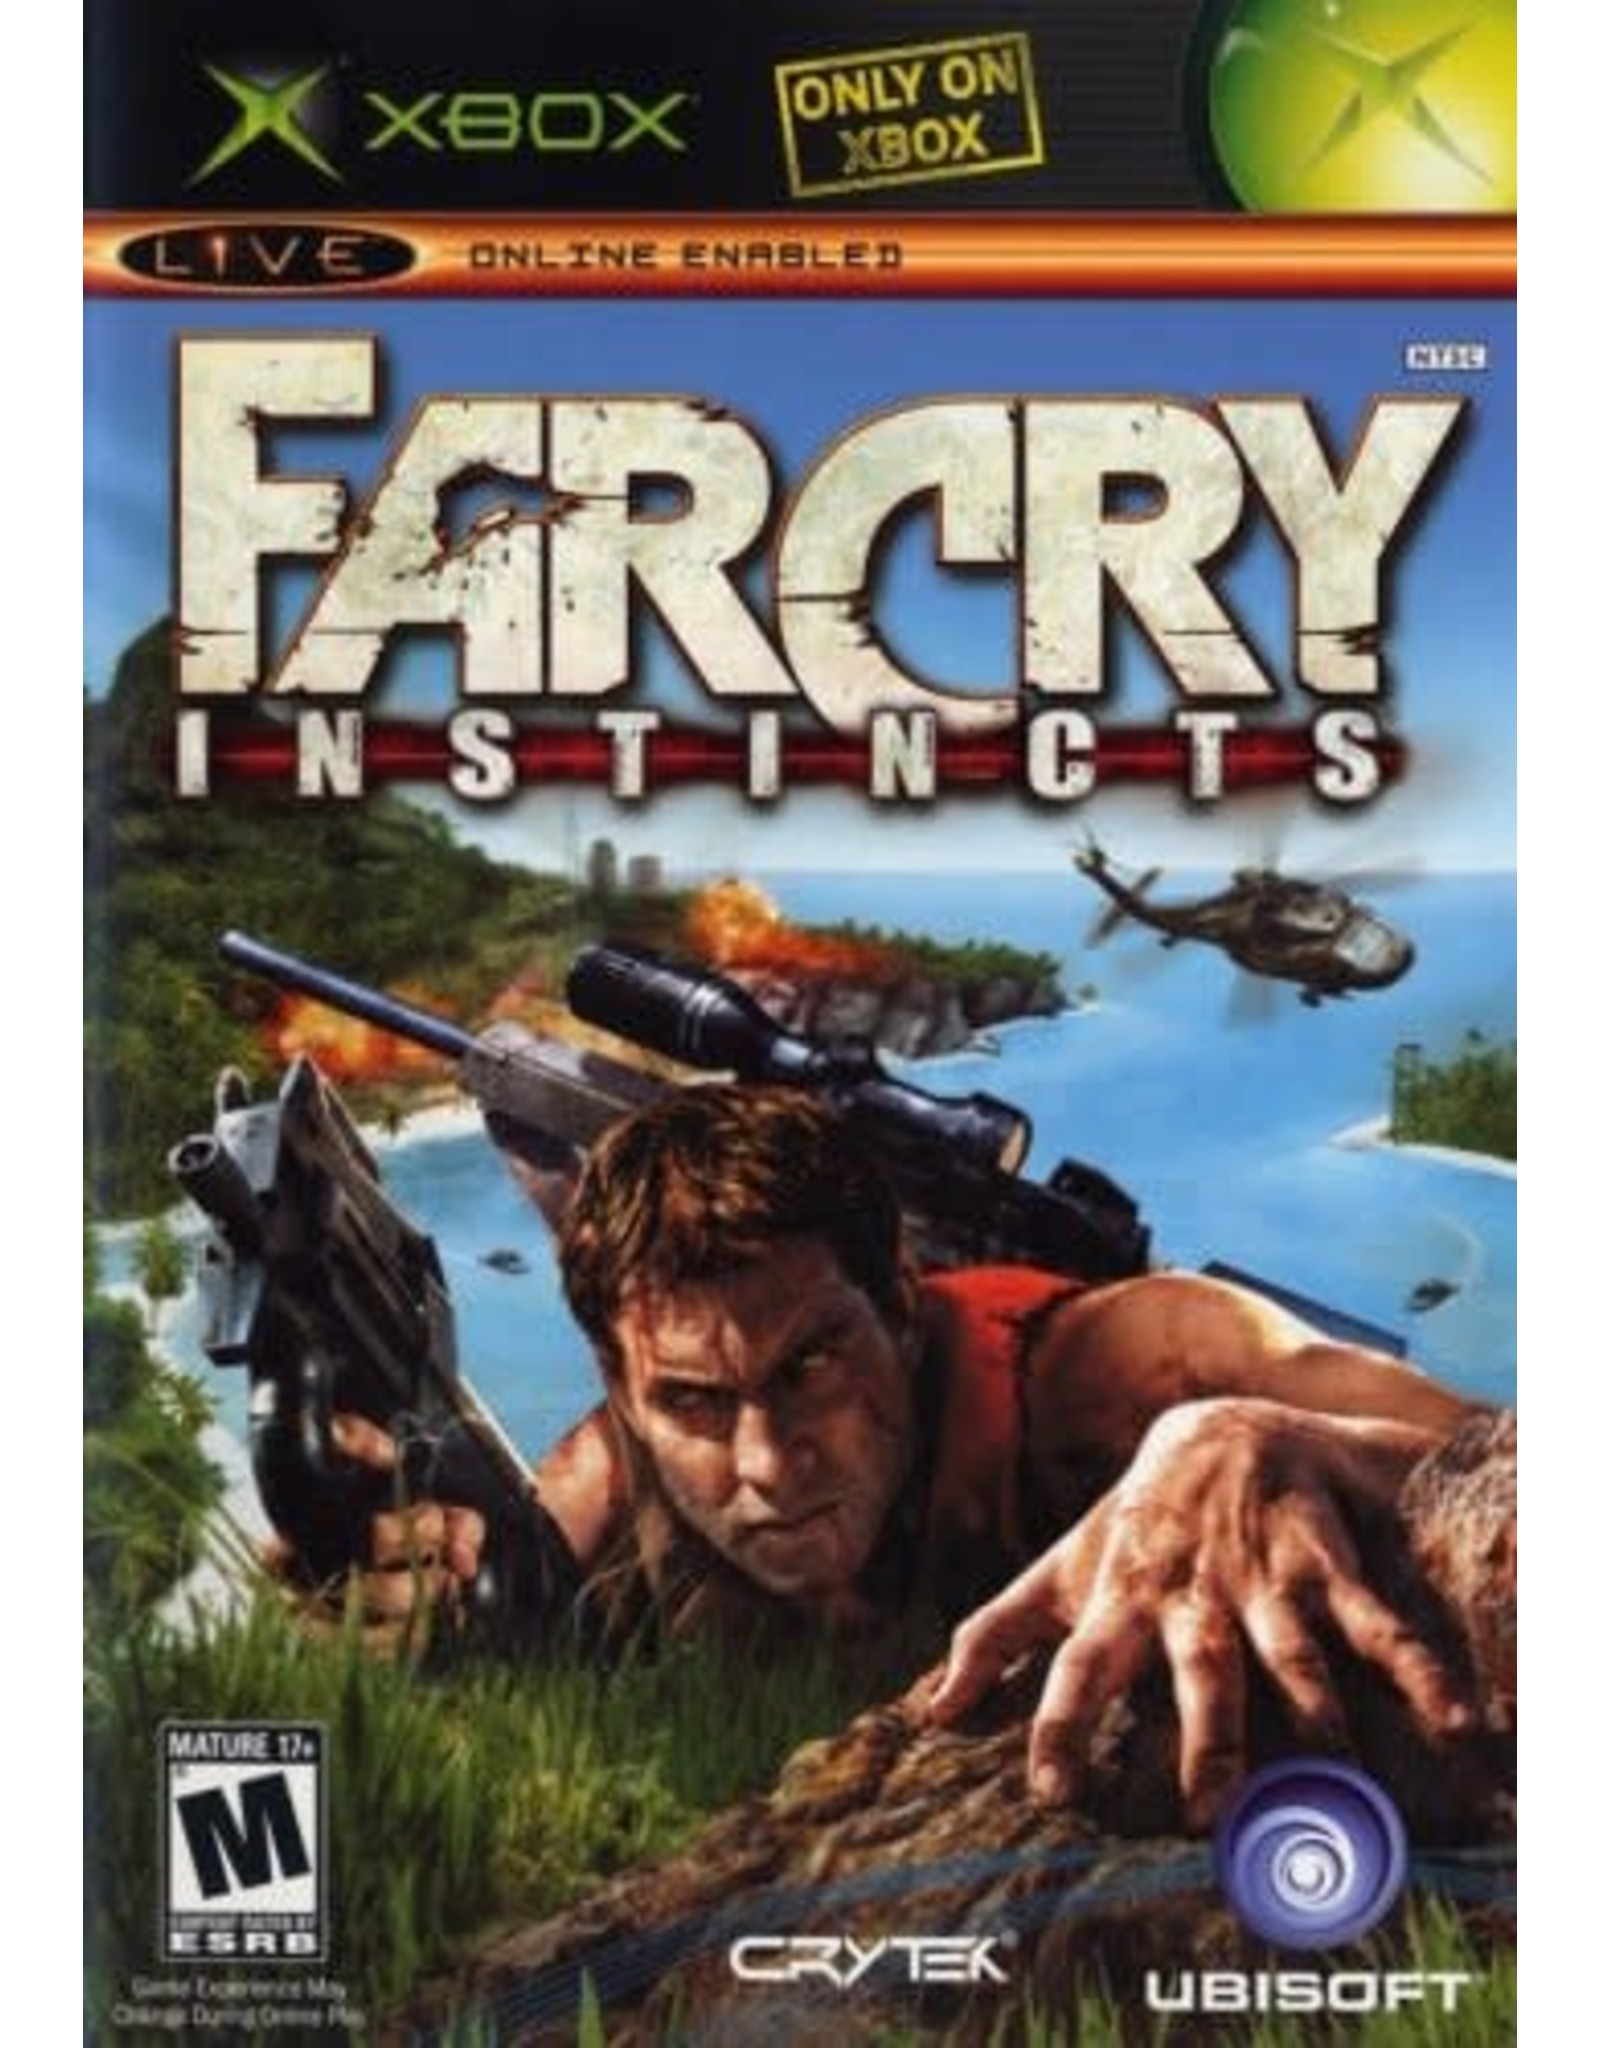 Xbox Far Cry Instincts (CiB)